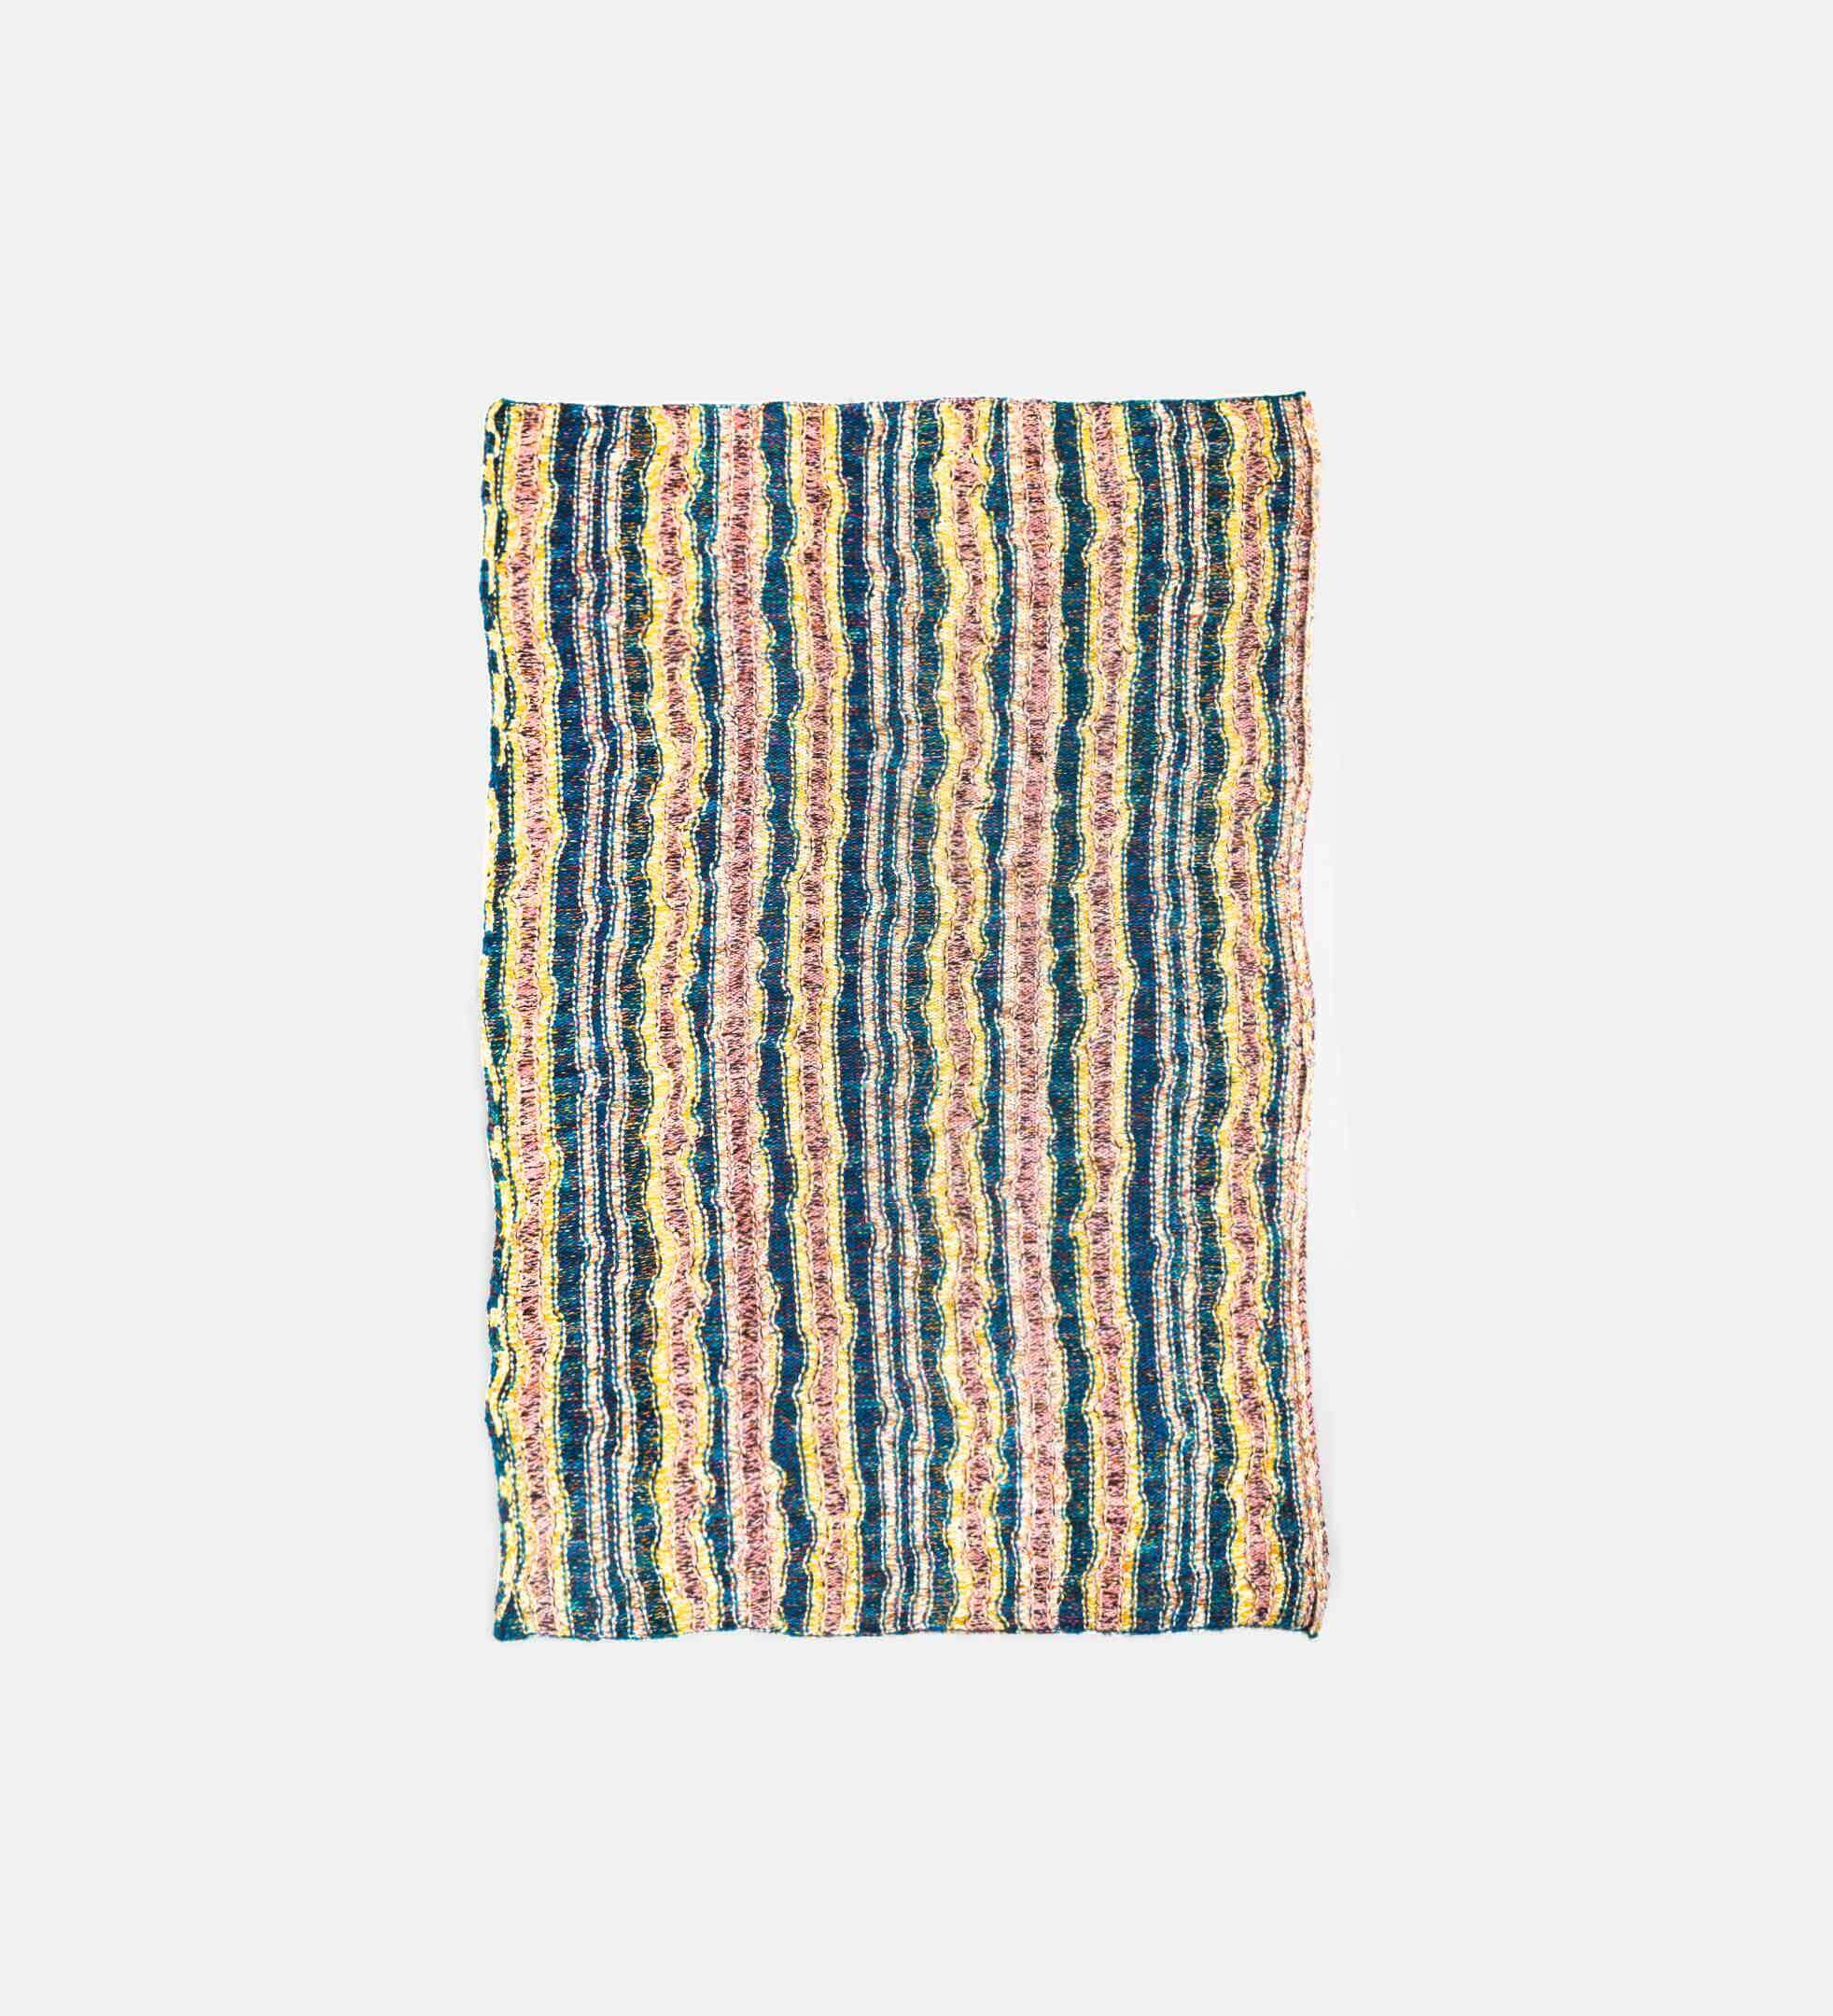 Disheveled Crochet Blanket - The Elder Statesman